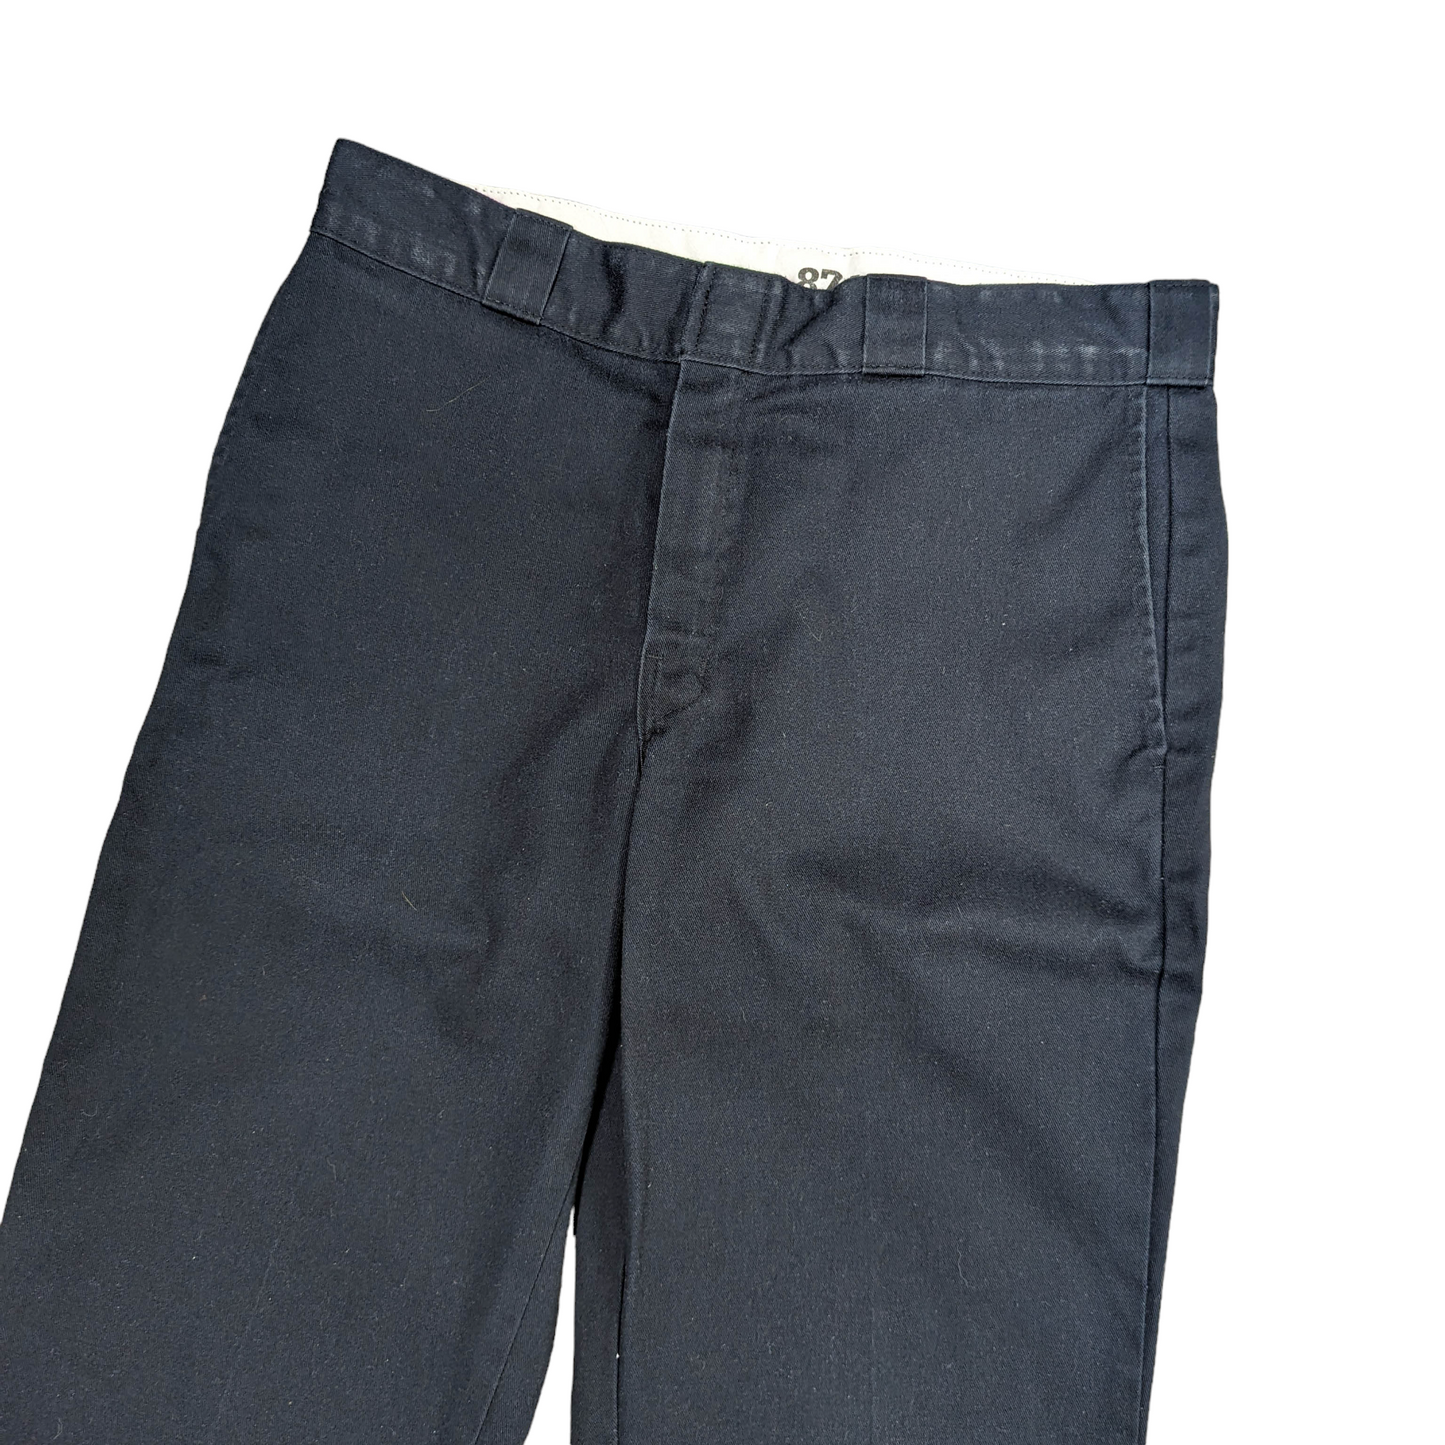 Dickies 874 Original Fit Trousers W34 L25